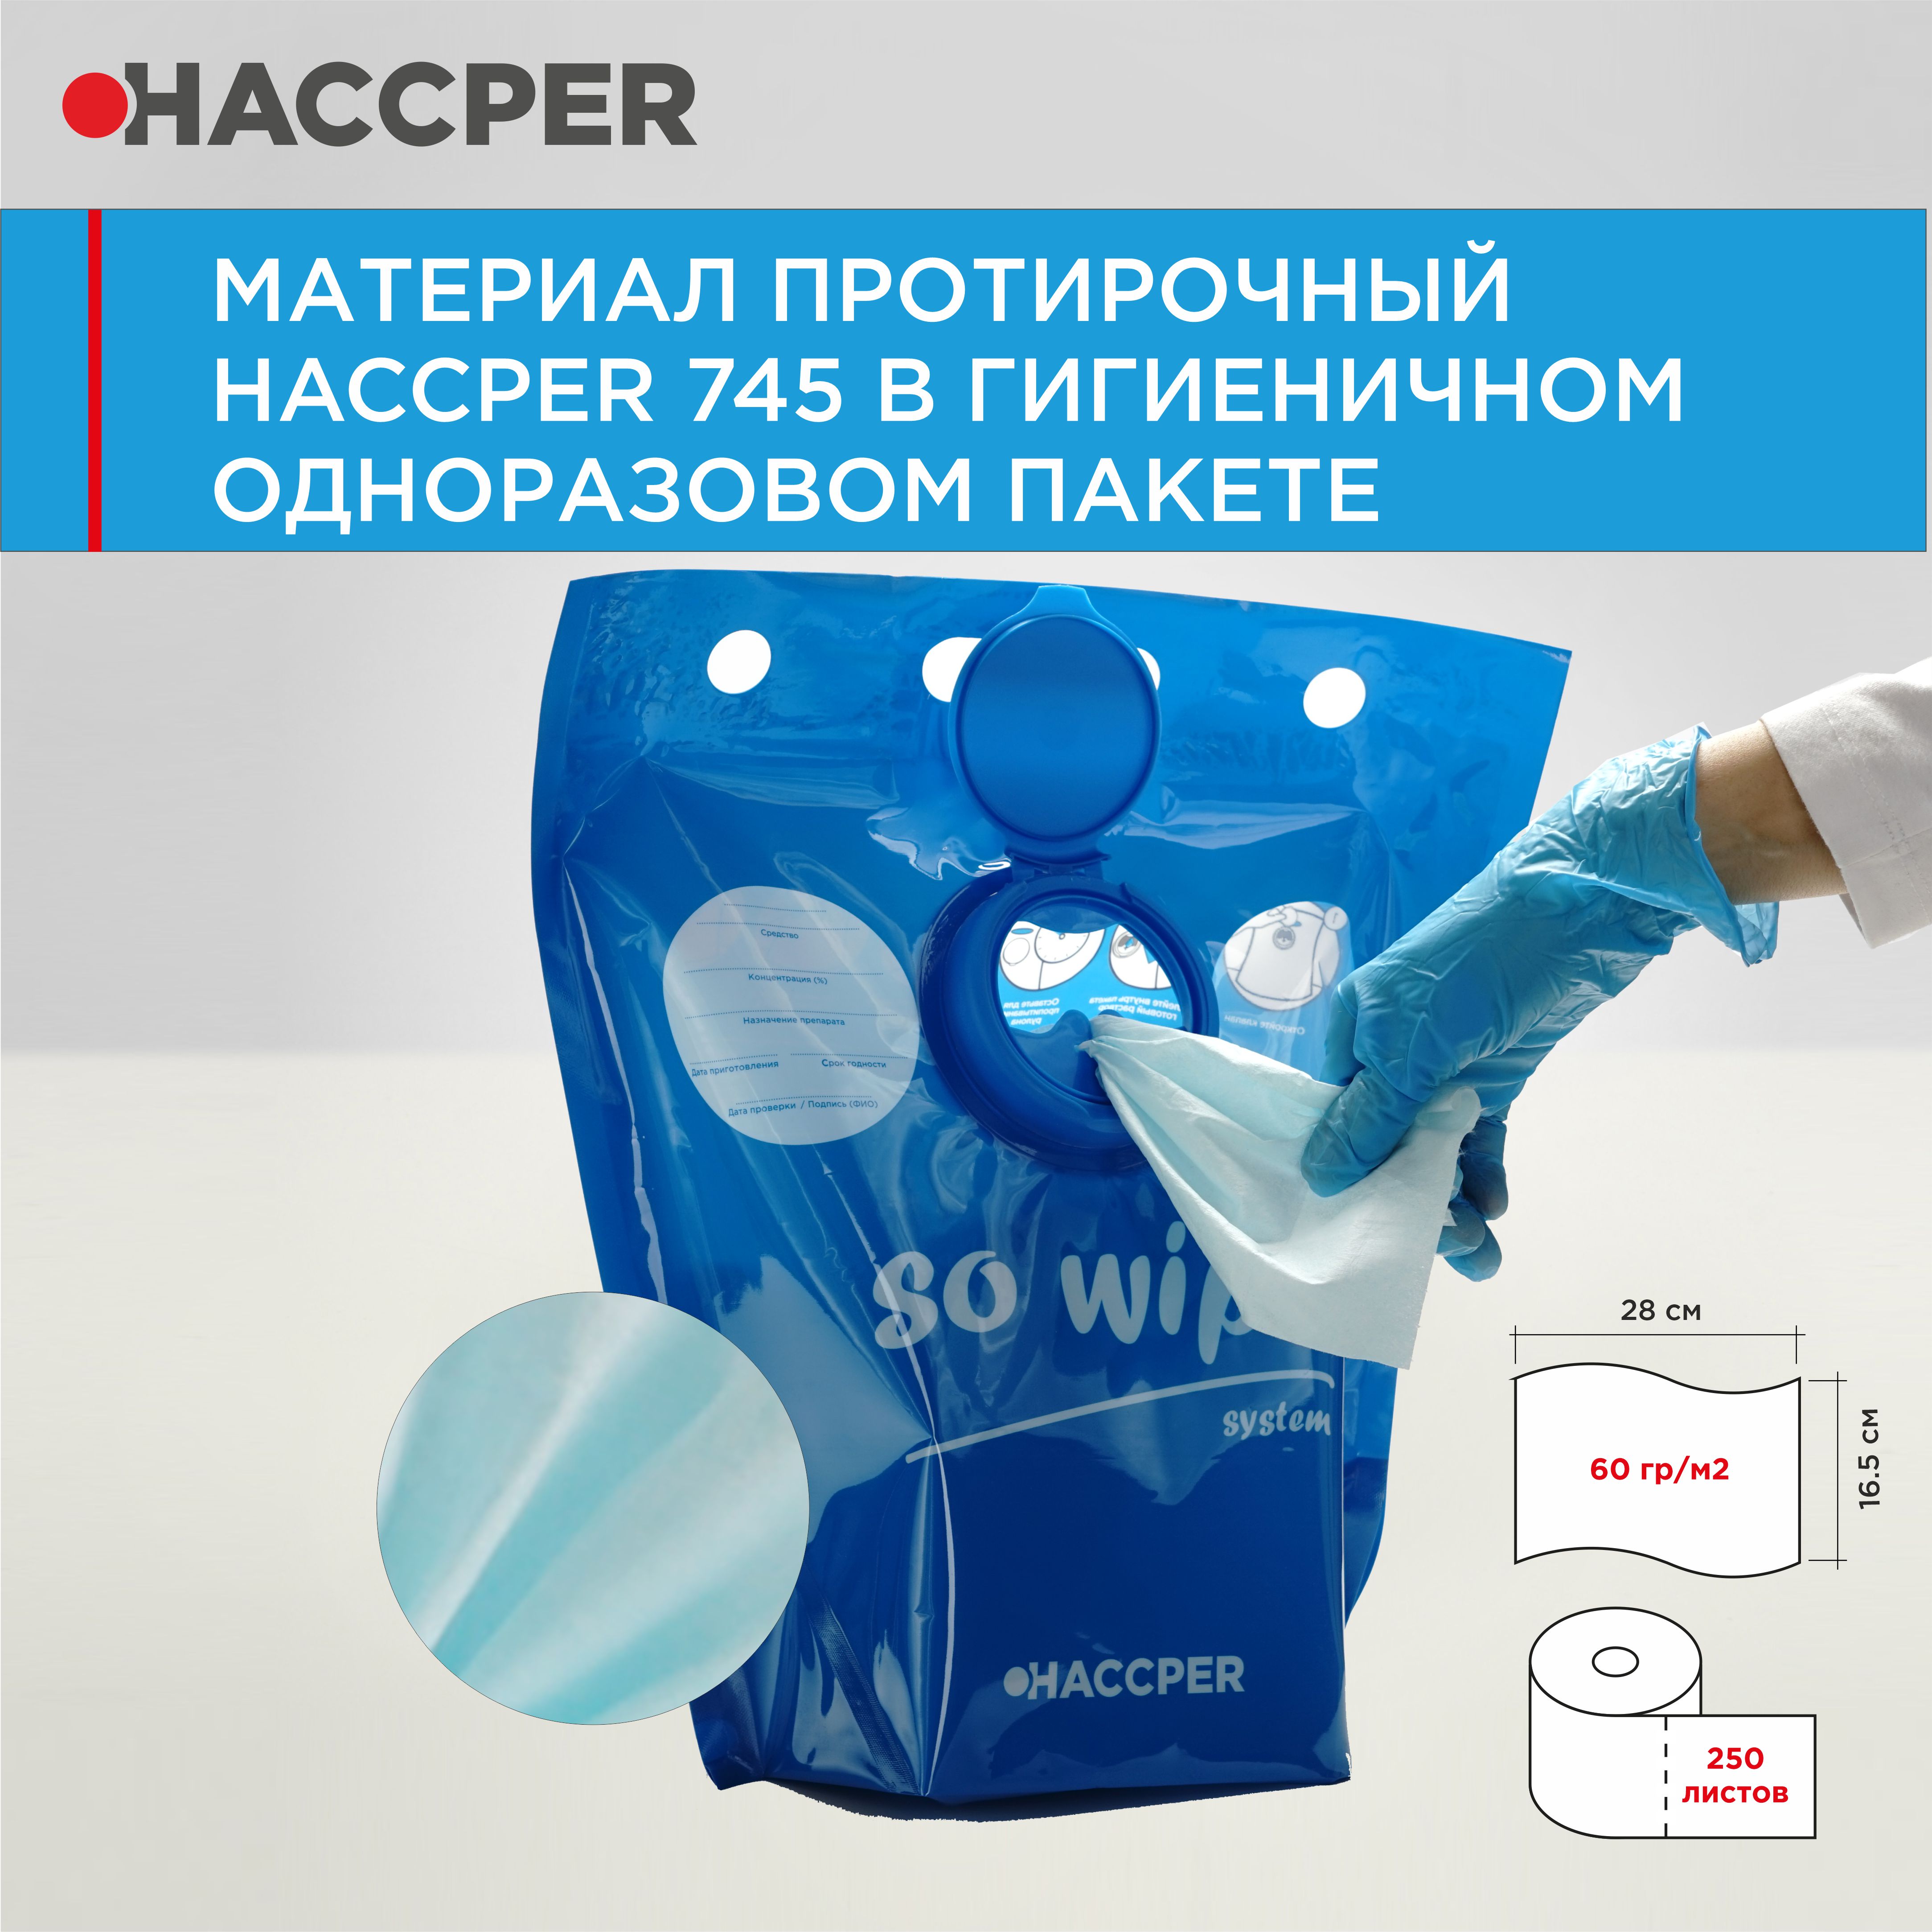 Материал протирочный HACCPER 745, 165х280 мм, бир, 250 л/рул, в гигиеничном одноразовом пакете